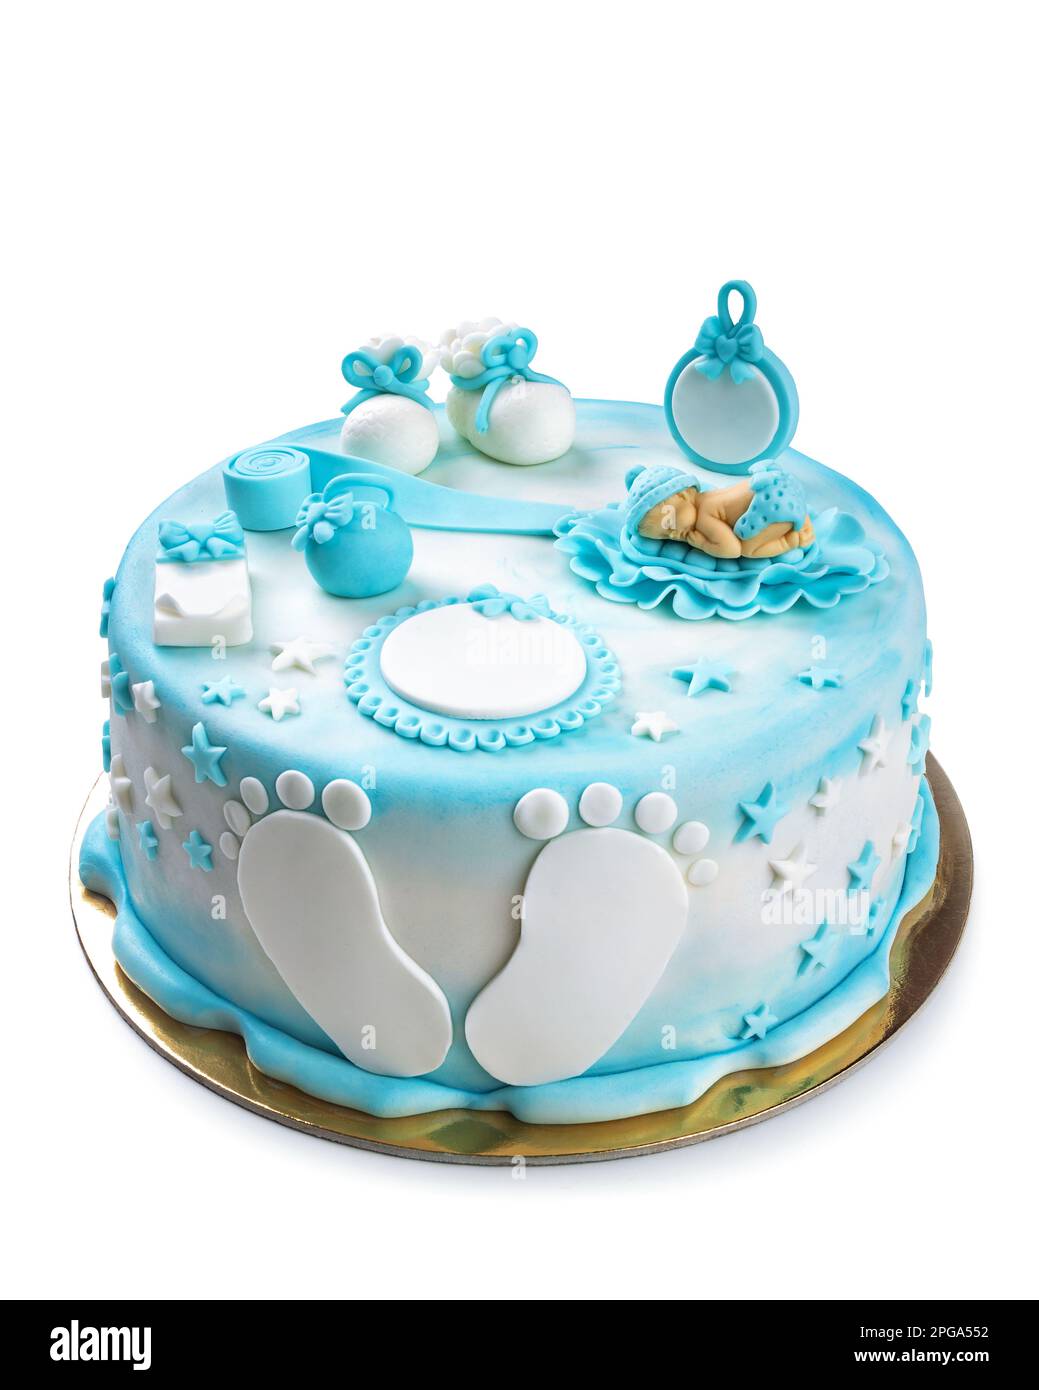 Gâteau blanc et bleu avec un bébé endormi sur le dessus et quelques pieds avec des chaussons pour l'anniversaire d'un bébé isolé sur blanc Banque D'Images